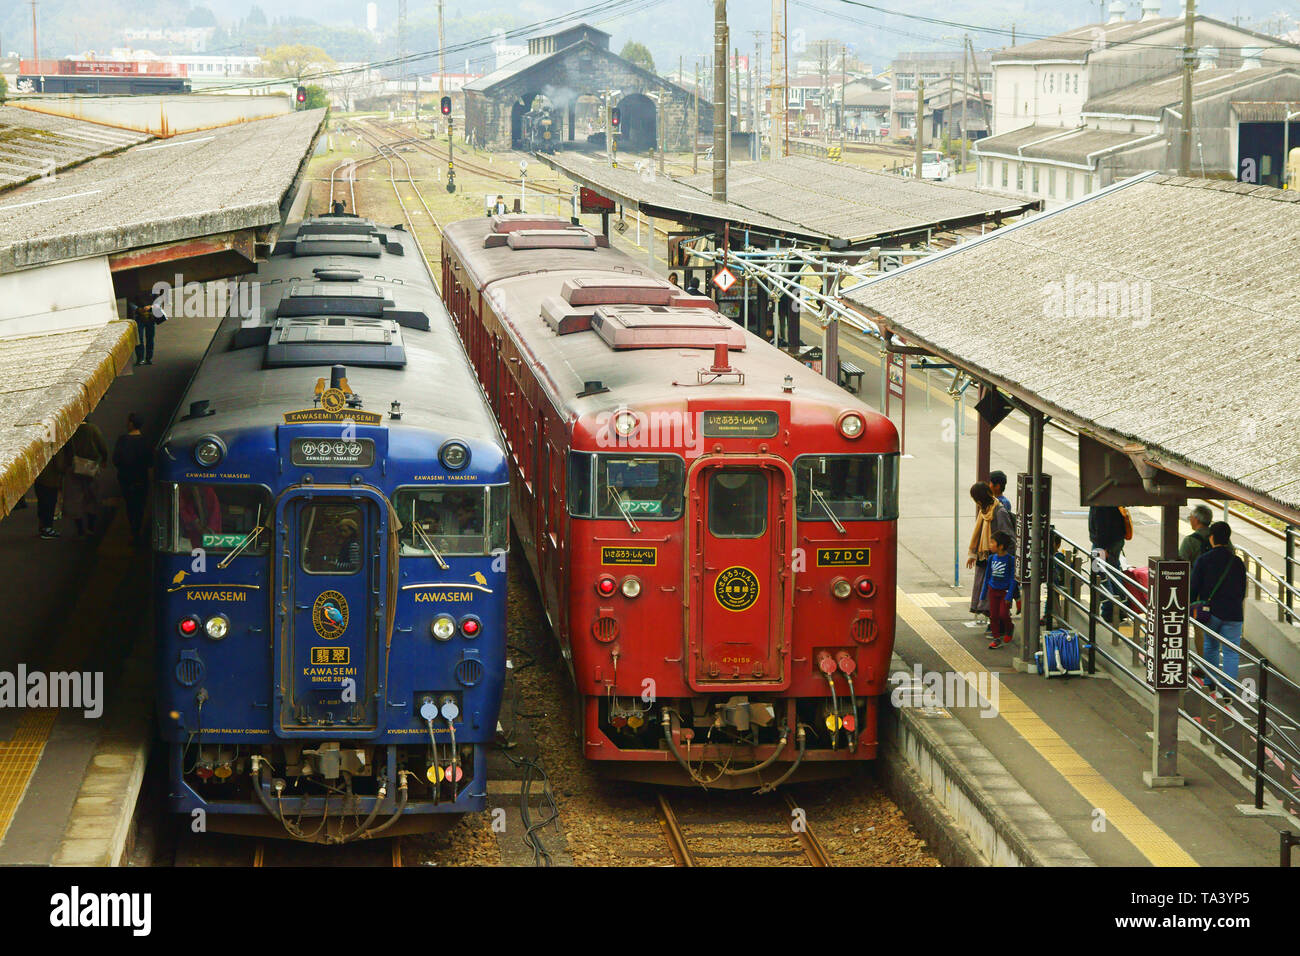 Kawasemi Yamasemi, two-car limited express train Stock Photo